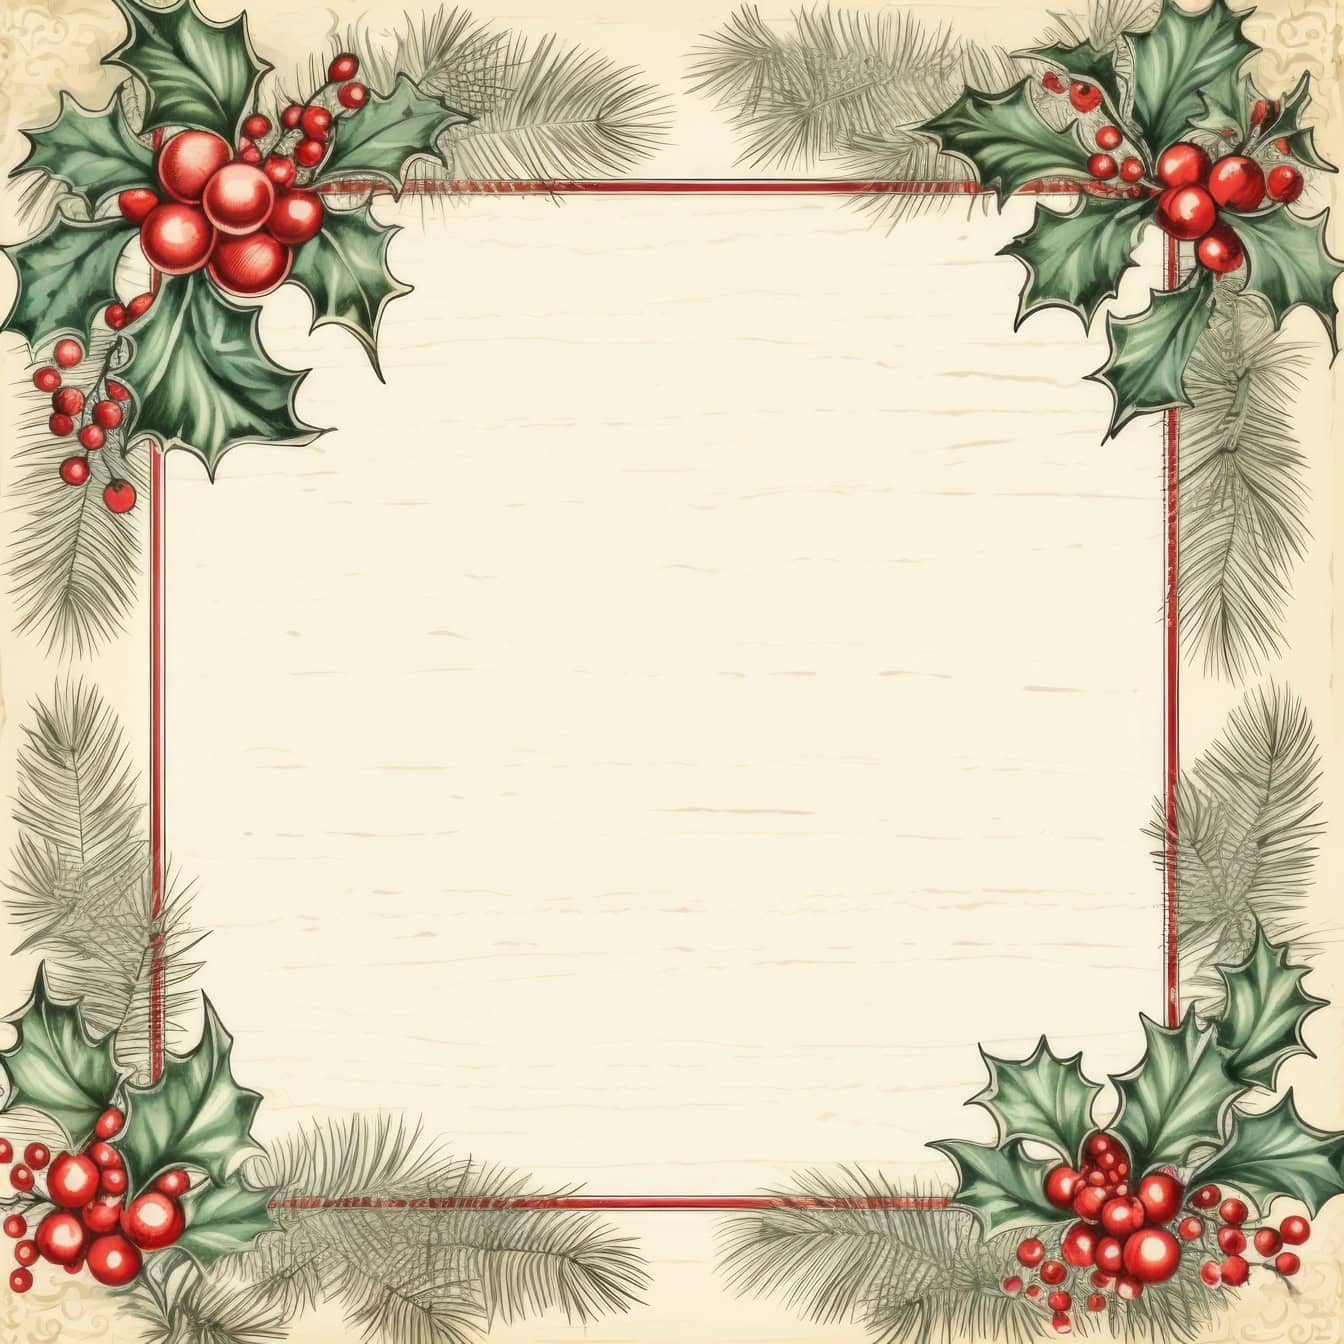 Ένα πρότυπο ευχετήριας κάρτας ρετρό στυλ Πρωτοχρονιάς με τετράγωνο πλαίσιο με στεφάνι πουρναριού με μούρα και κλαδιά πεύκου